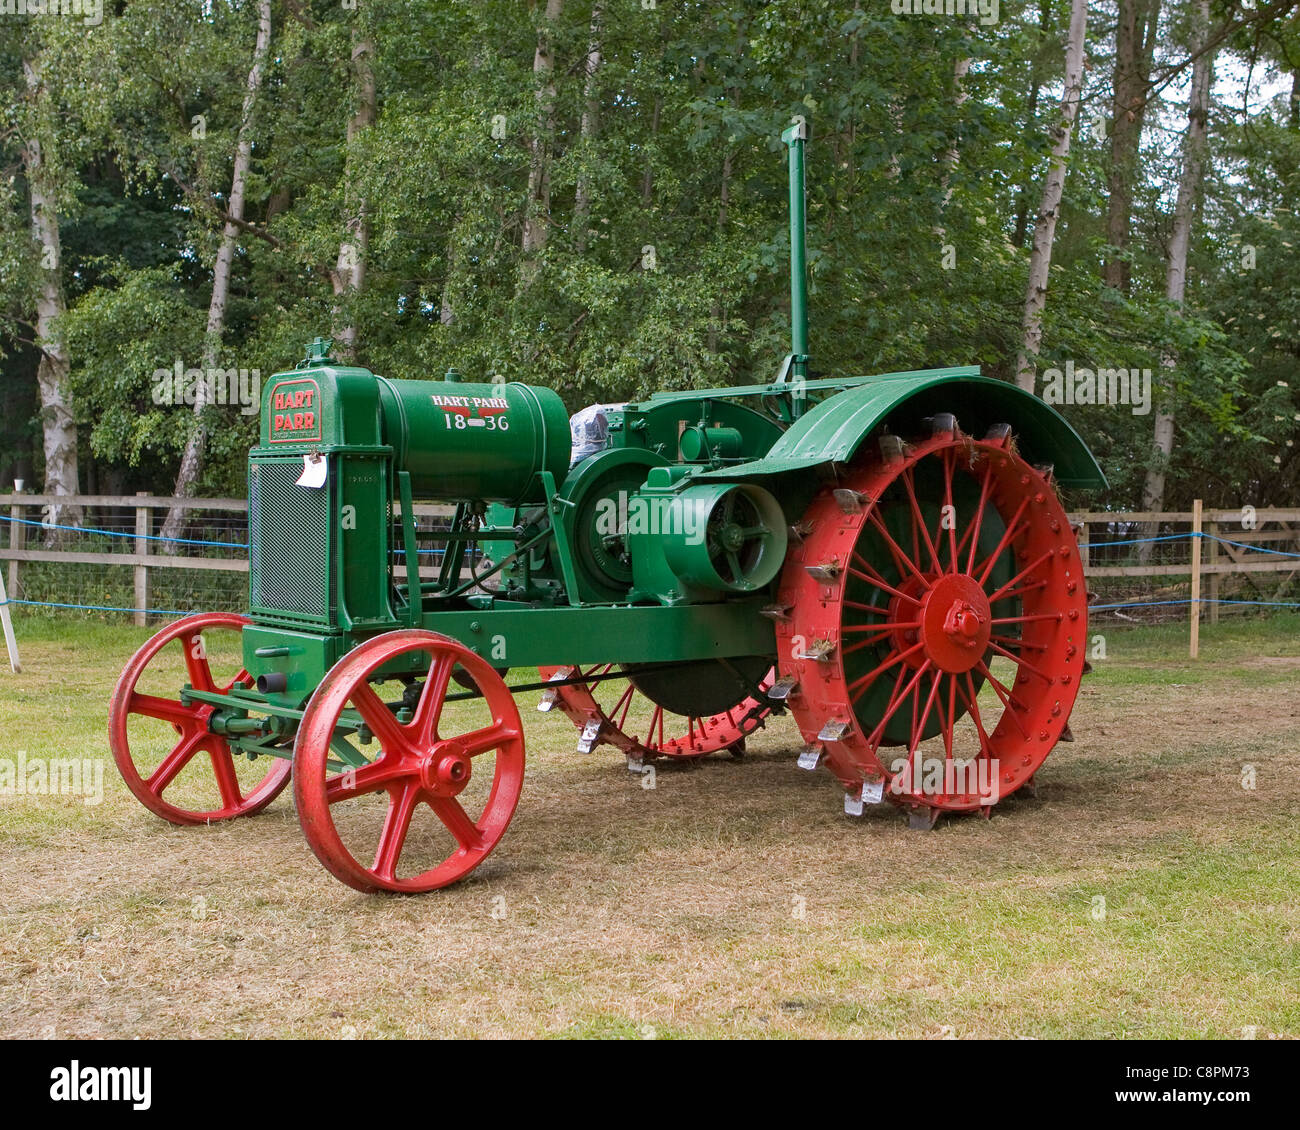 Hart-Parr Modell 18-36 Traktor Stockfoto